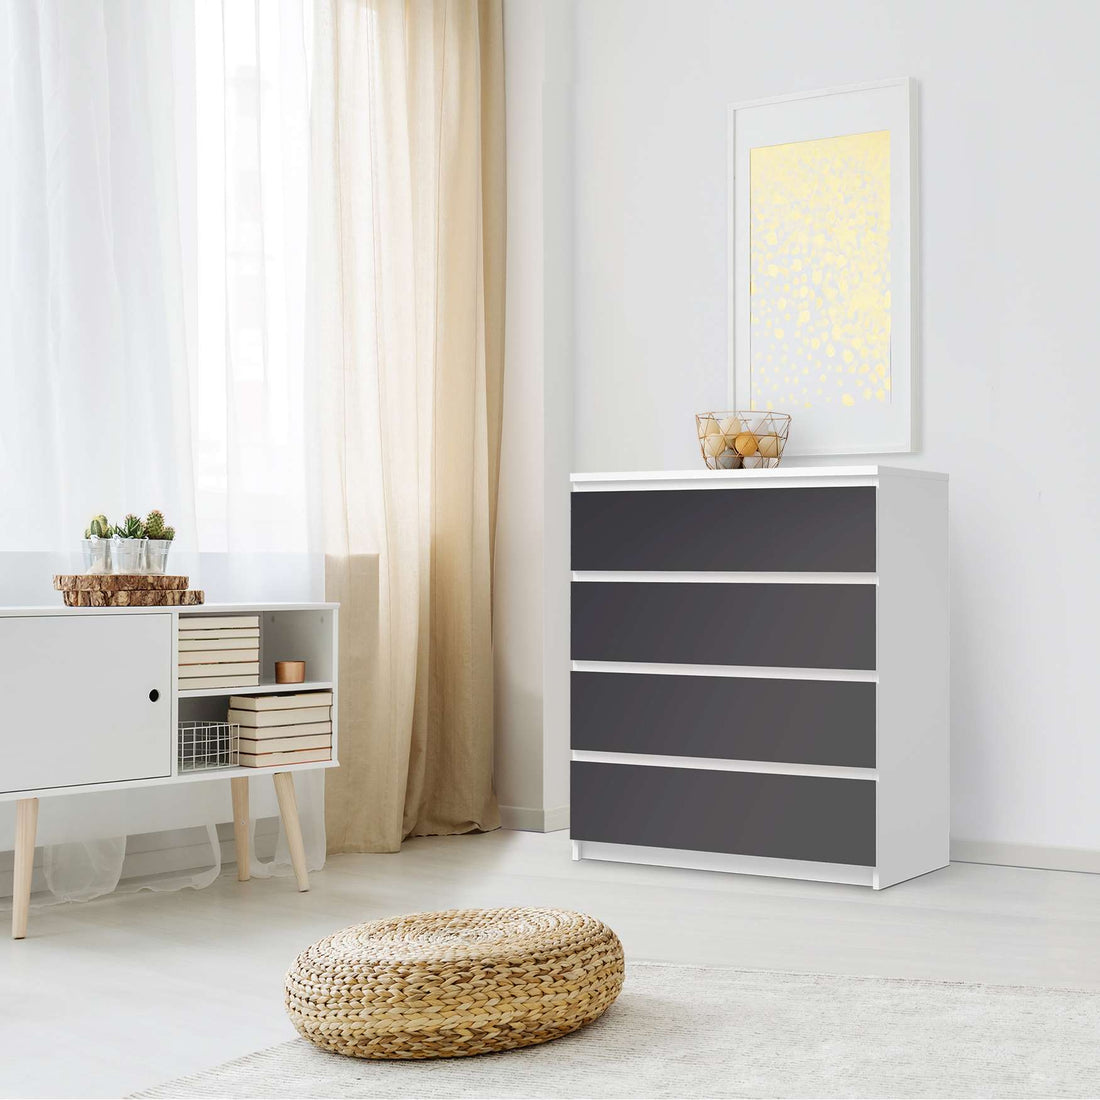 Folie für Möbel Grau Dark - IKEA Malm Kommode 4 Schubladen - Schlafzimmer